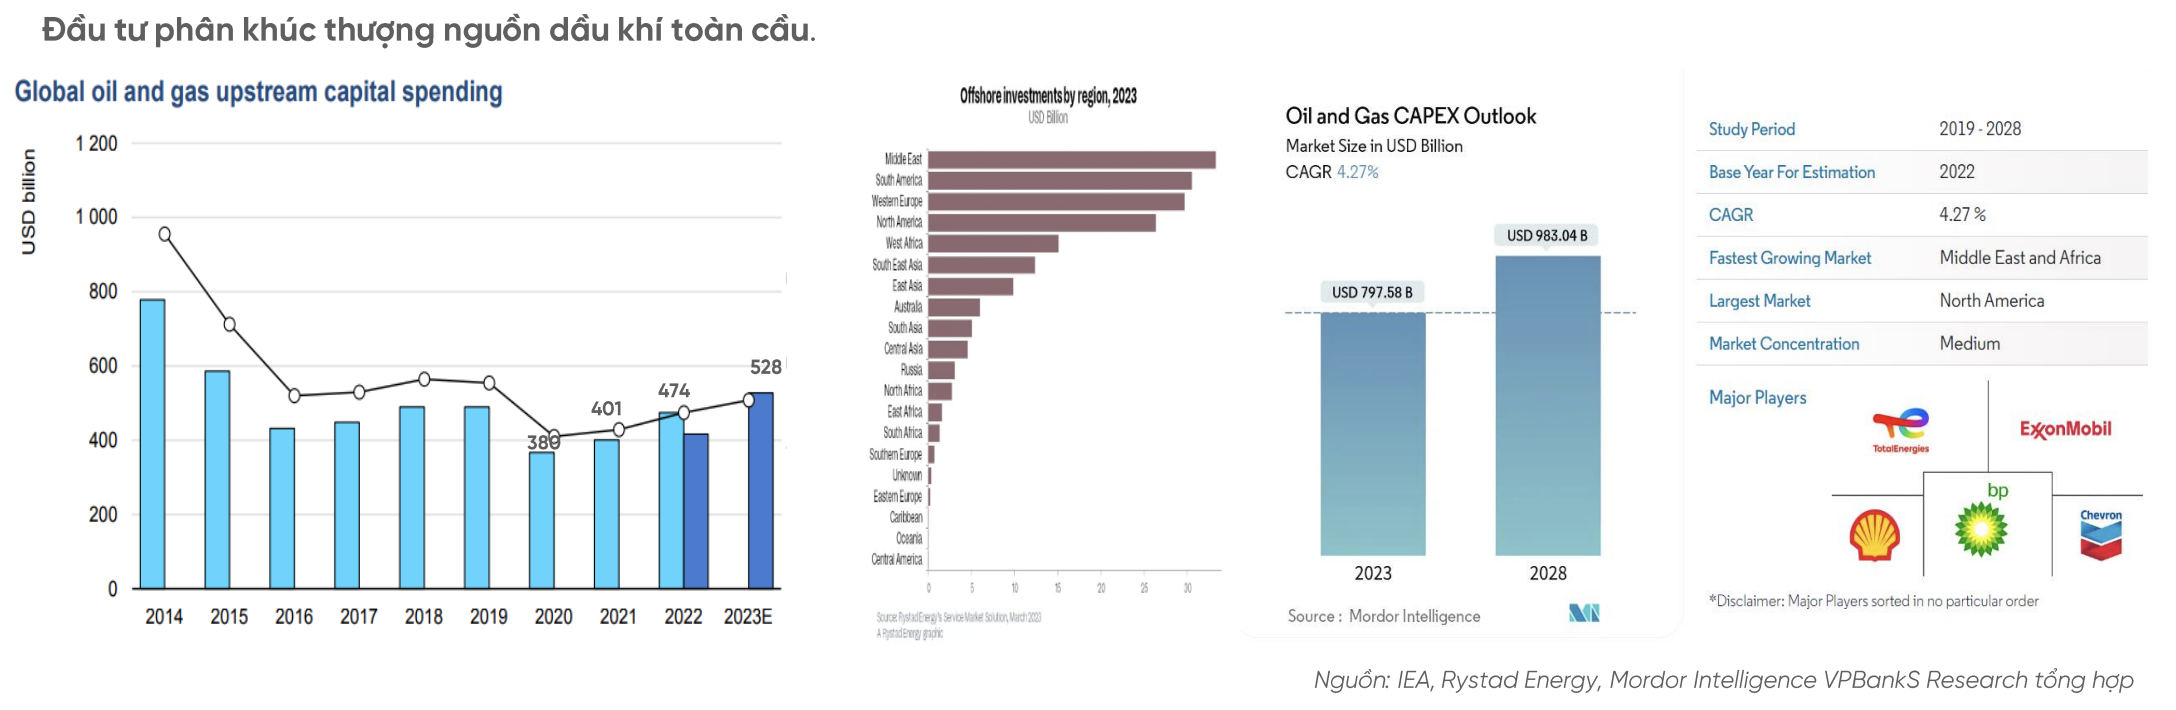 Bức tranh lợi nhuận ngành dầu khí năm 2023: Có vui, có buồn 3